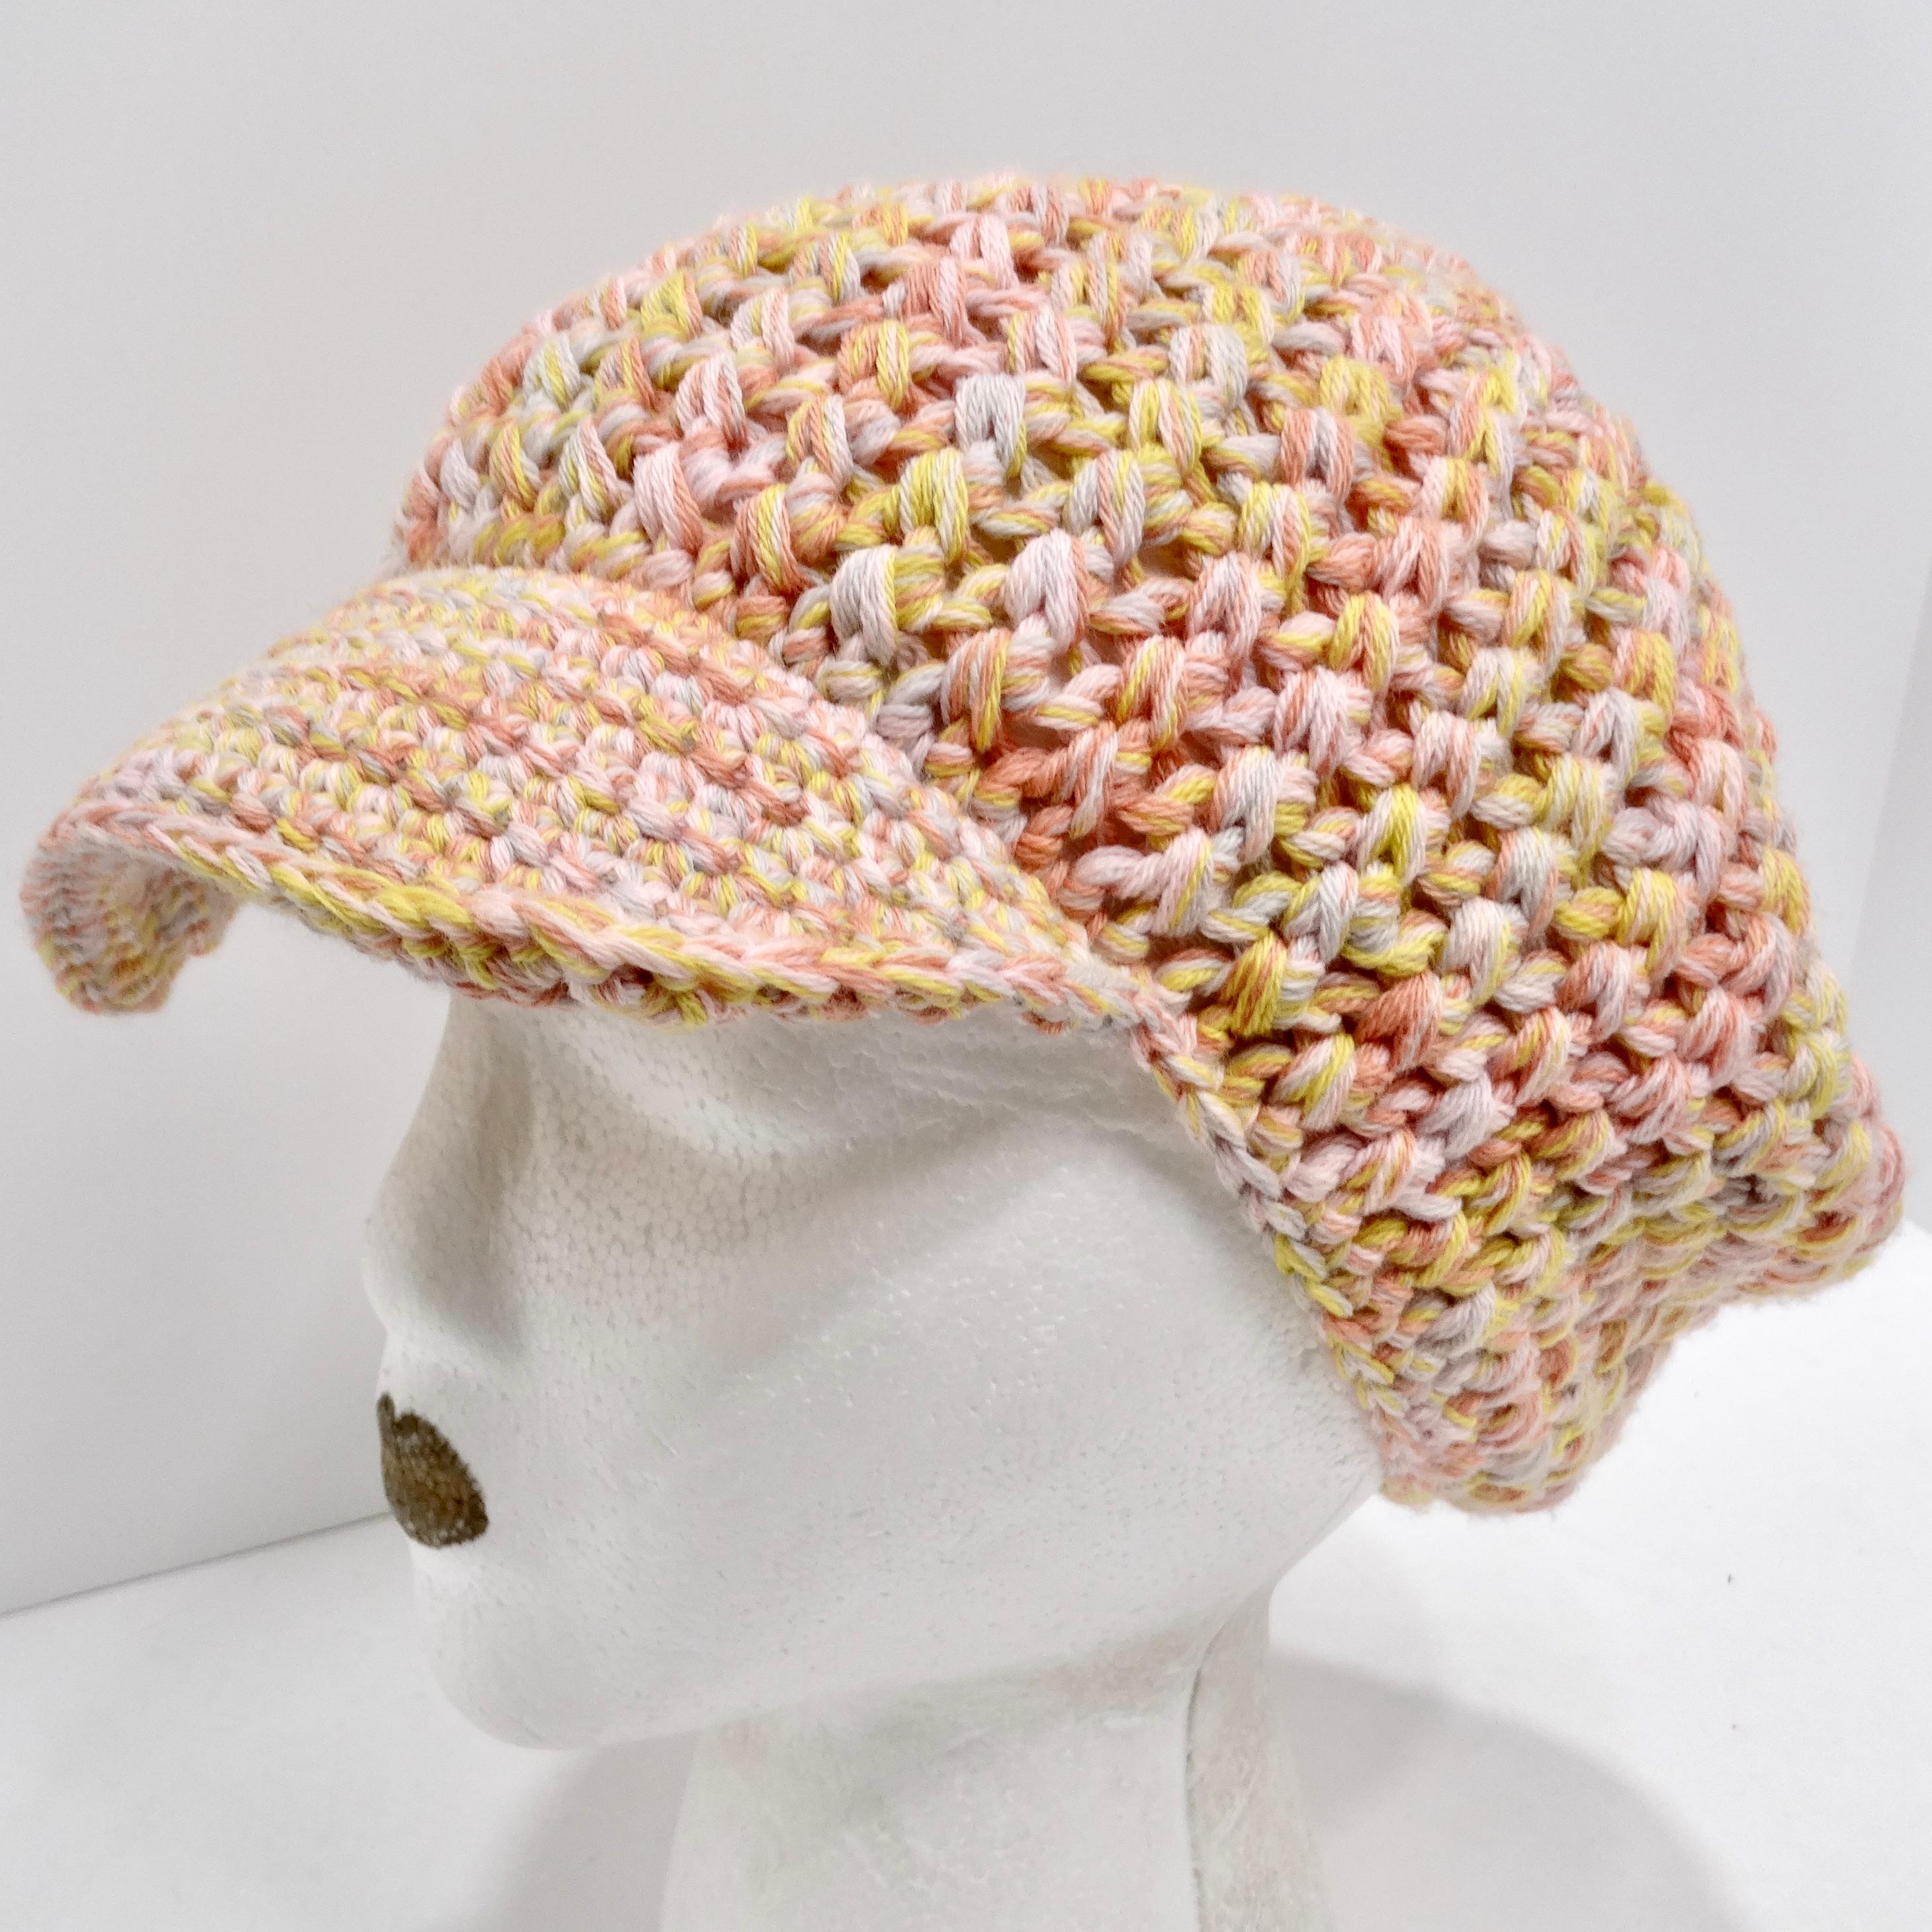 Verpassen Sie nicht die Missoni 1970s Multicolor Knit Hat - ein super lustiges und einzigartiges Accessoire, das mühelos den lebendigen und unbeschwerten Geist der 1970er Jahre widerspiegelt. Diese Strickmütze ist nicht nur eine Kopfbedeckung,